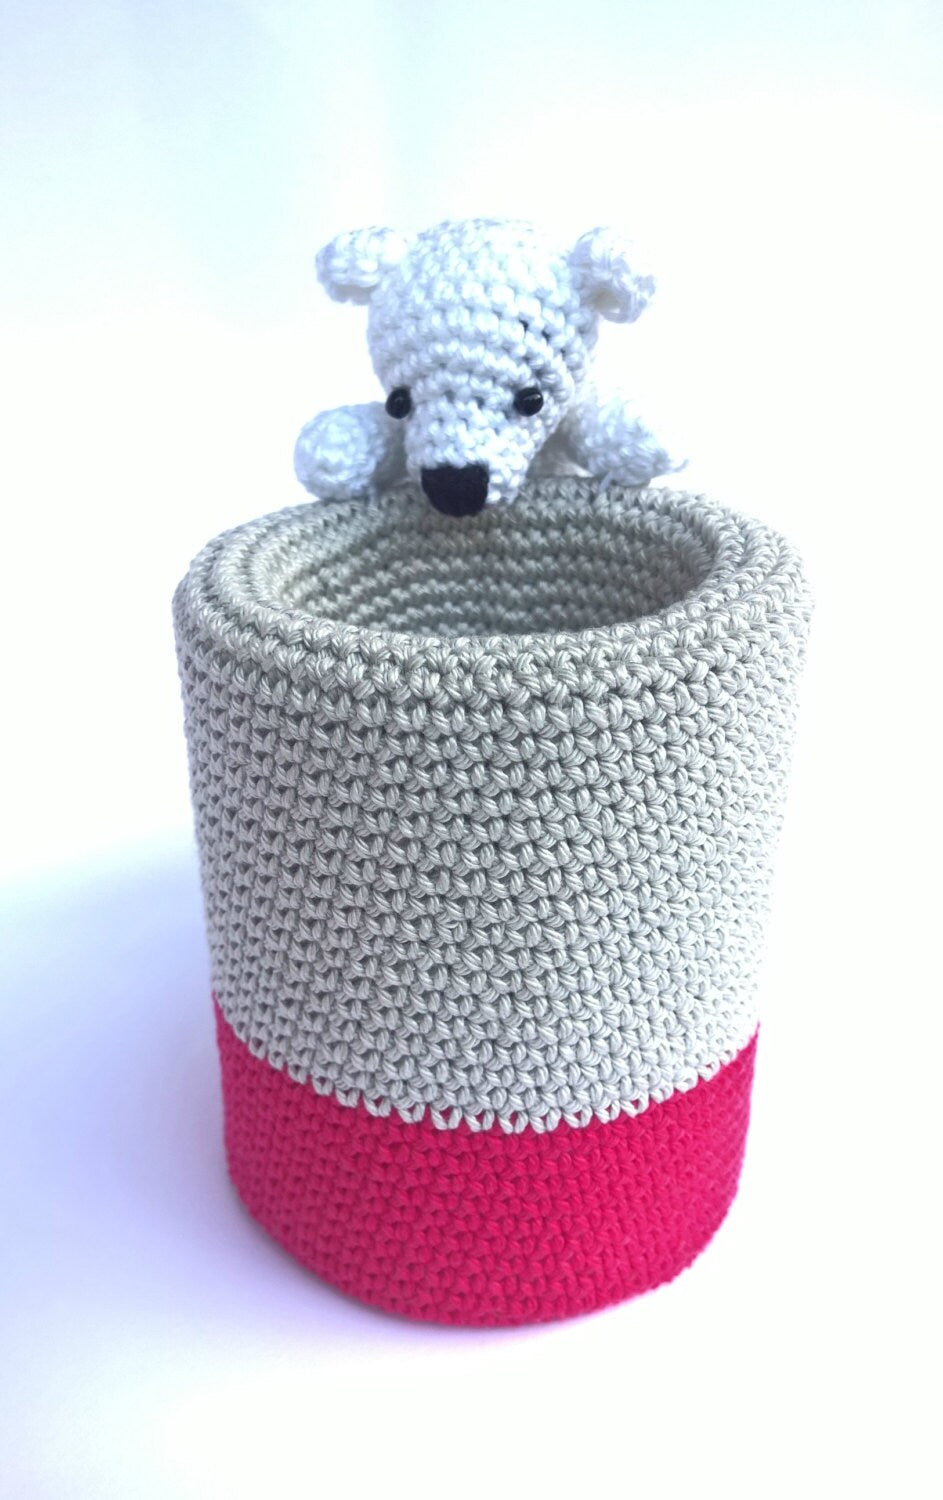 Crochet pen holder